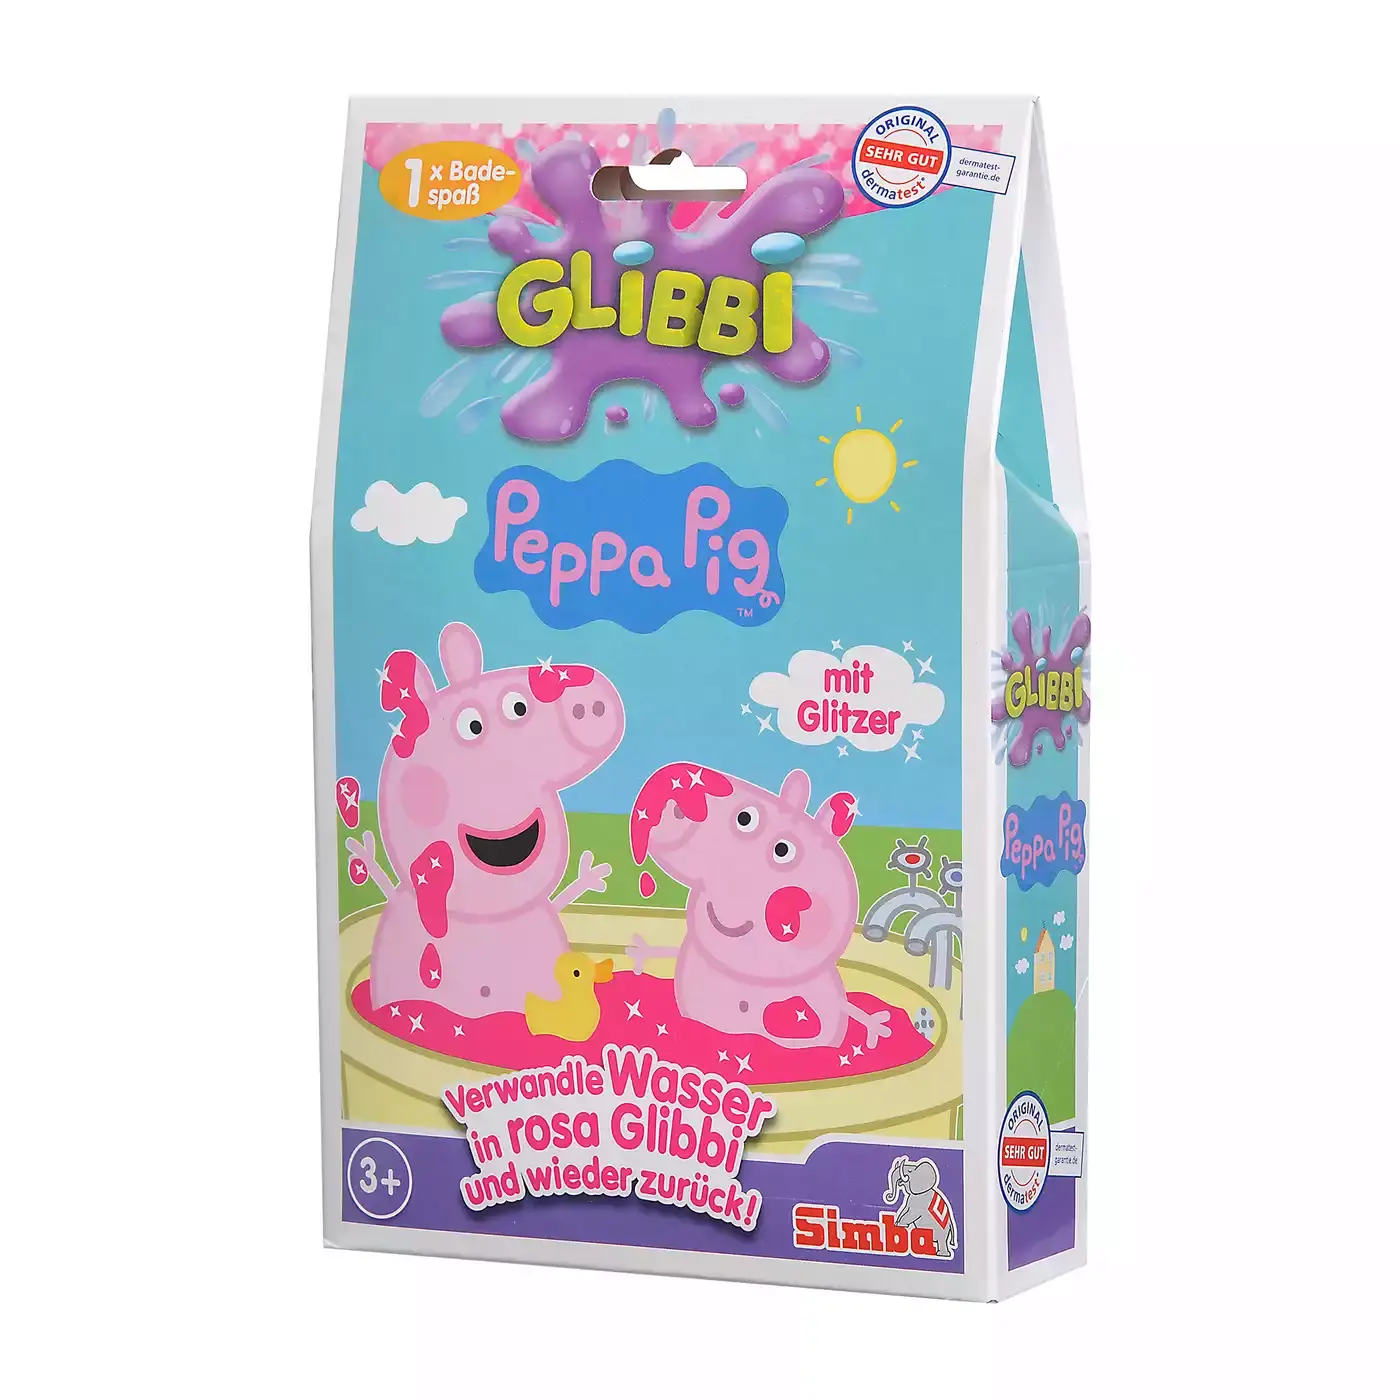 Glibbi Peppa Pig Simba 2000577395705 3